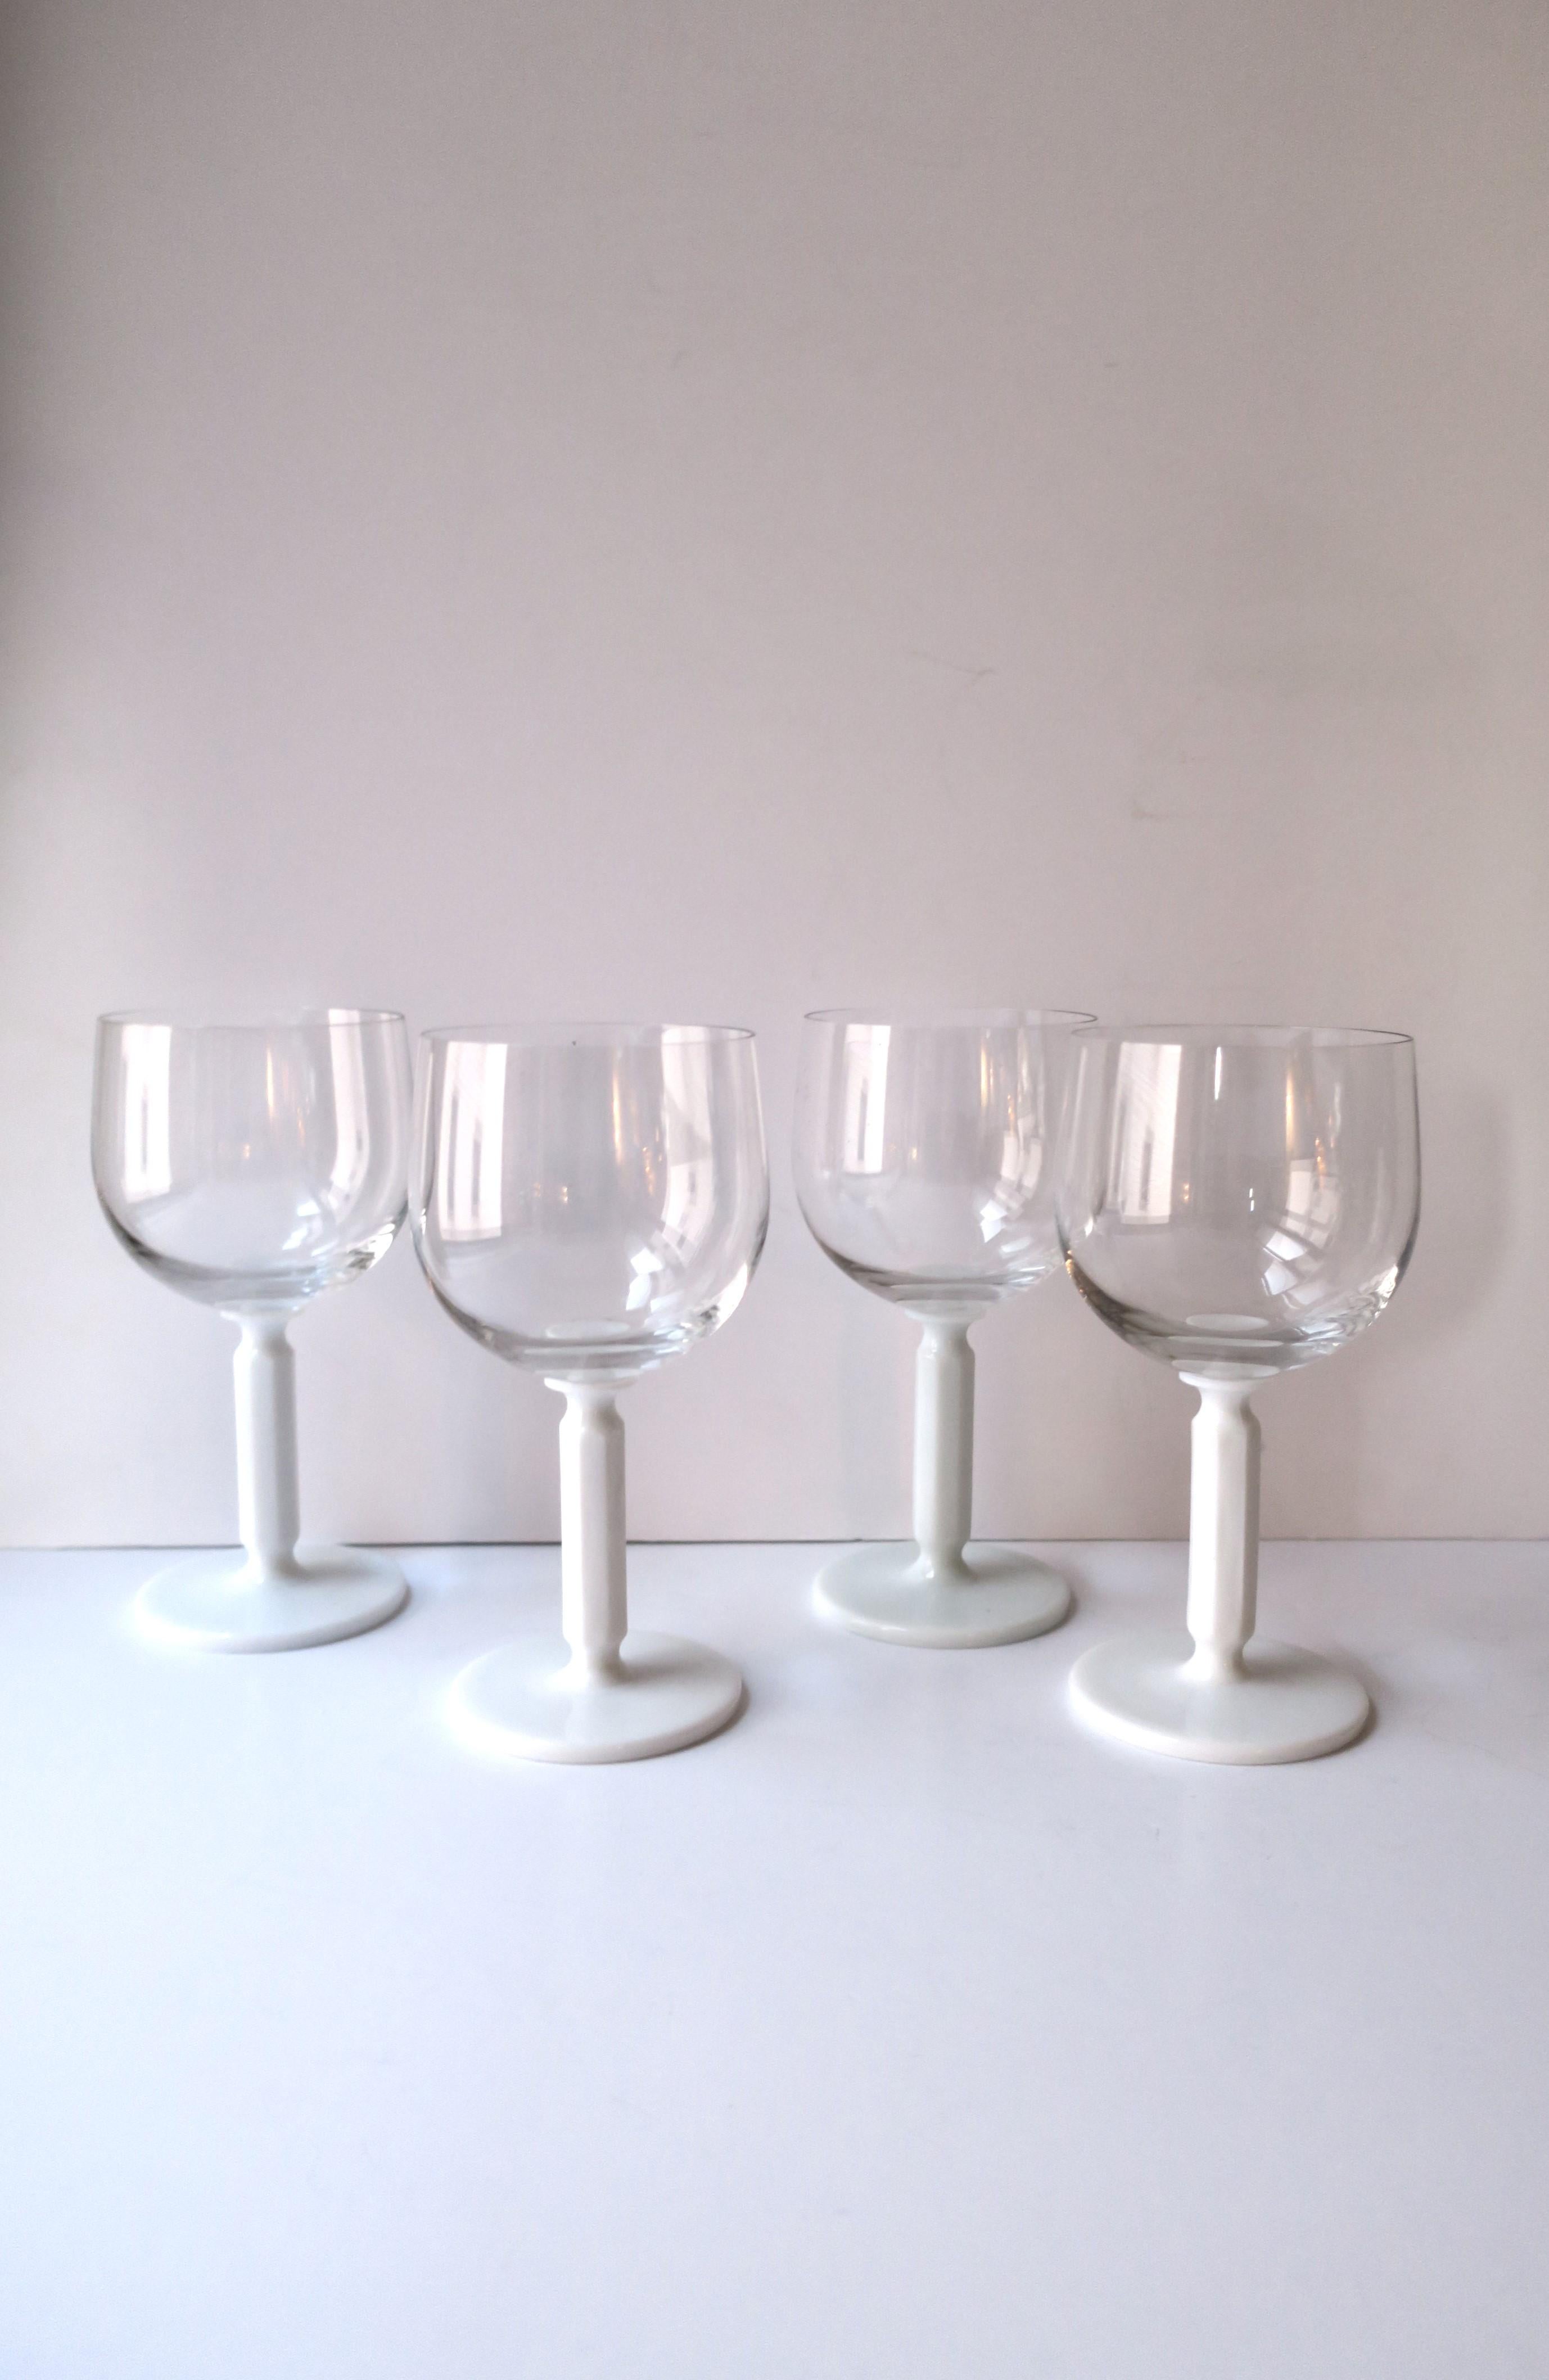 Un magnifique et chic ensemble de quatre (4) verres à eau, à vin ou à cocktail en cristal Rosenthal Studio-Line avec pied en verre de lait opaque blanc. La tige blanche a une forme octogonale, ce qui constitue un joli détail de conception.